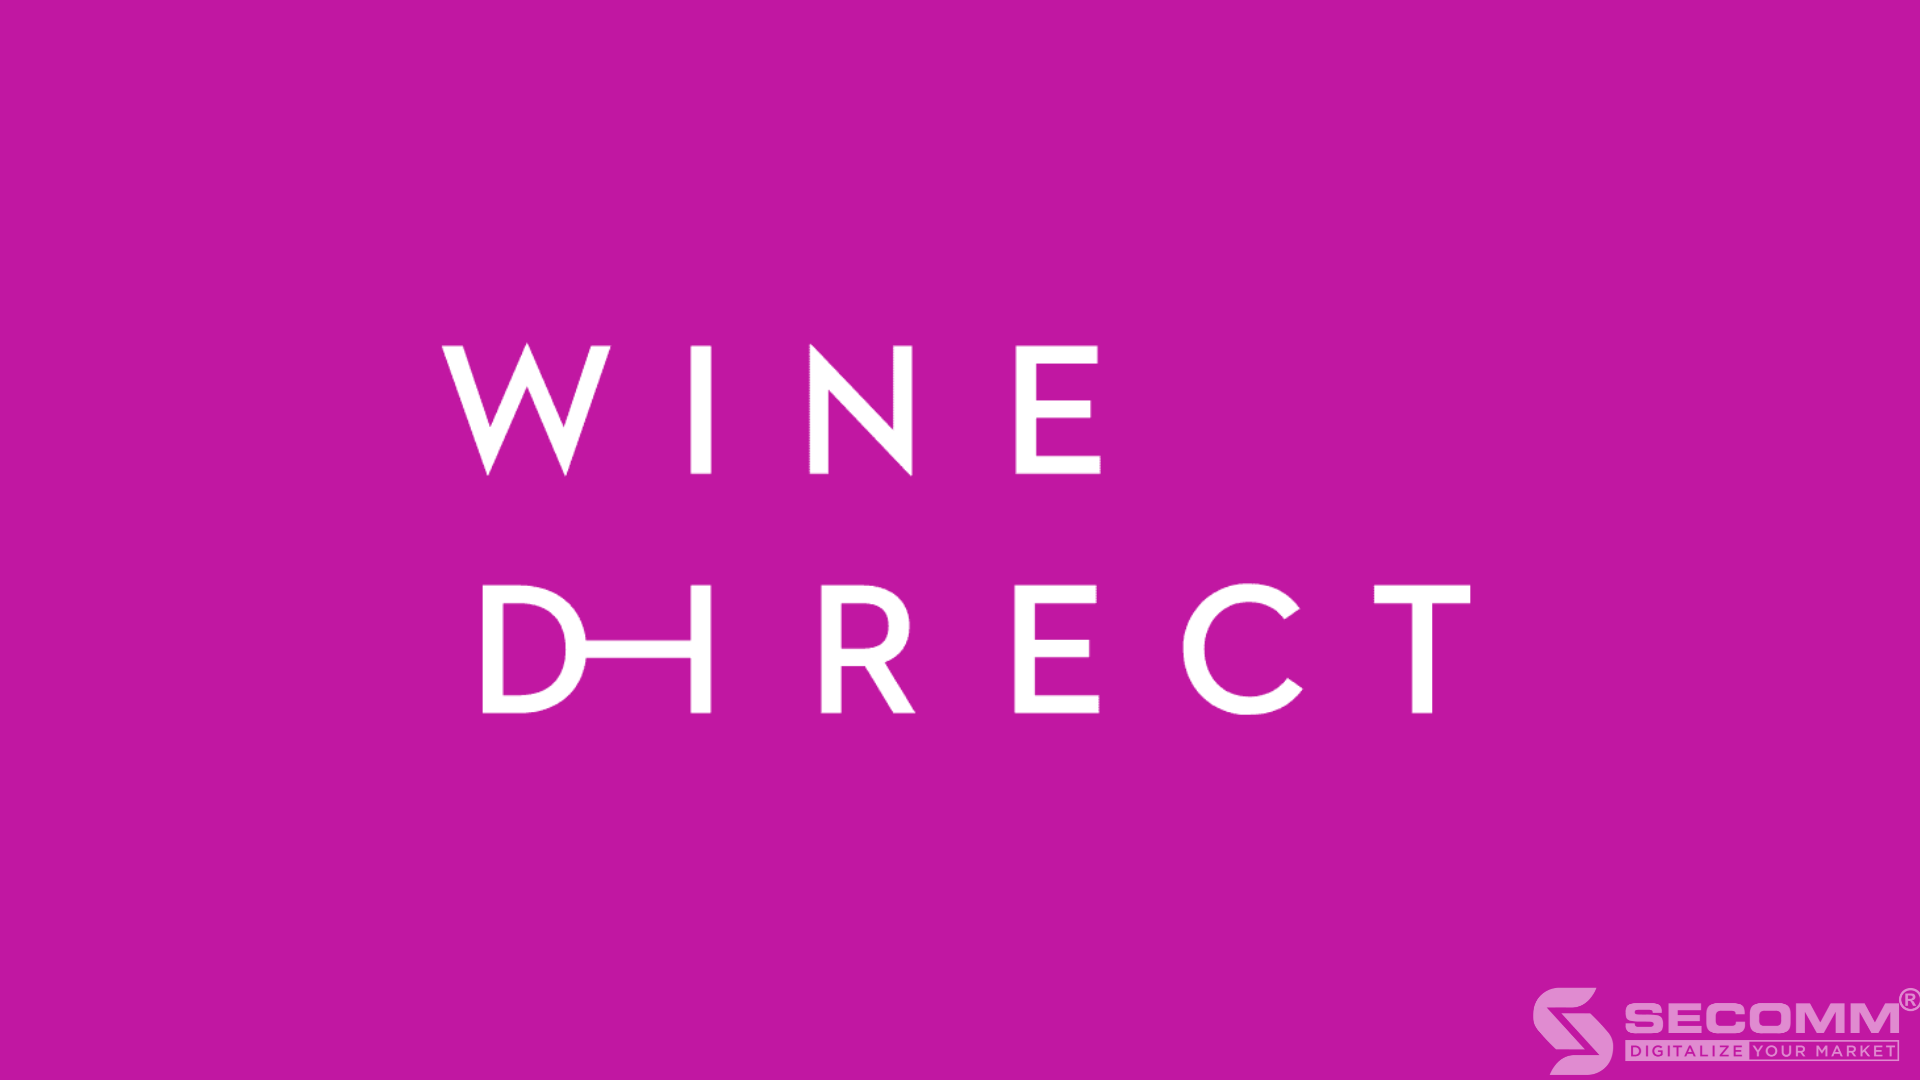 WineDirect là nền tảng được thiết kế cho các doanh nghiệp rượu không có kinh nghiệm với các nền tảng thương mại điện tử